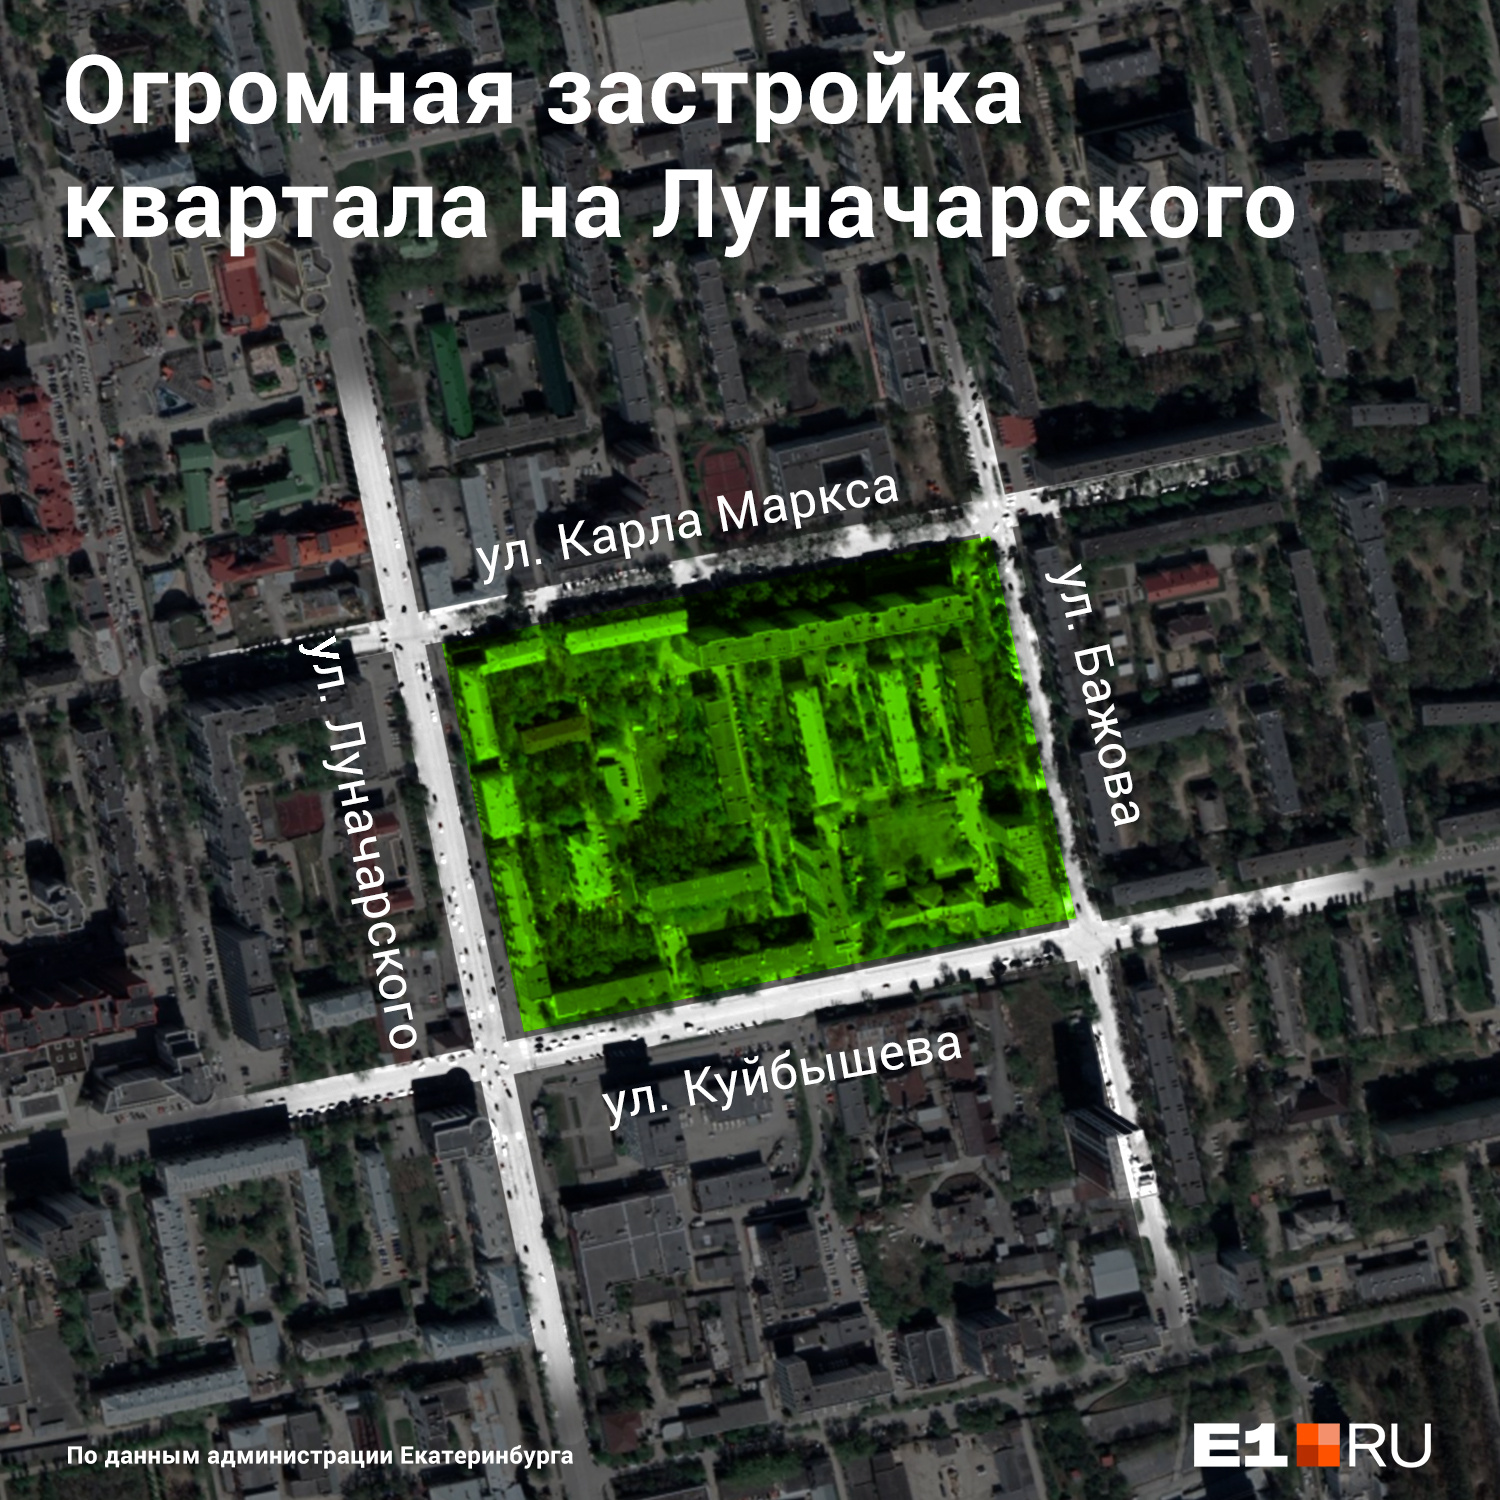 В этом квартале, по предложению Николая Сметанина, можно построить 2<nobr class="_">9 т</nobr>ысяч квадратных метров жилья